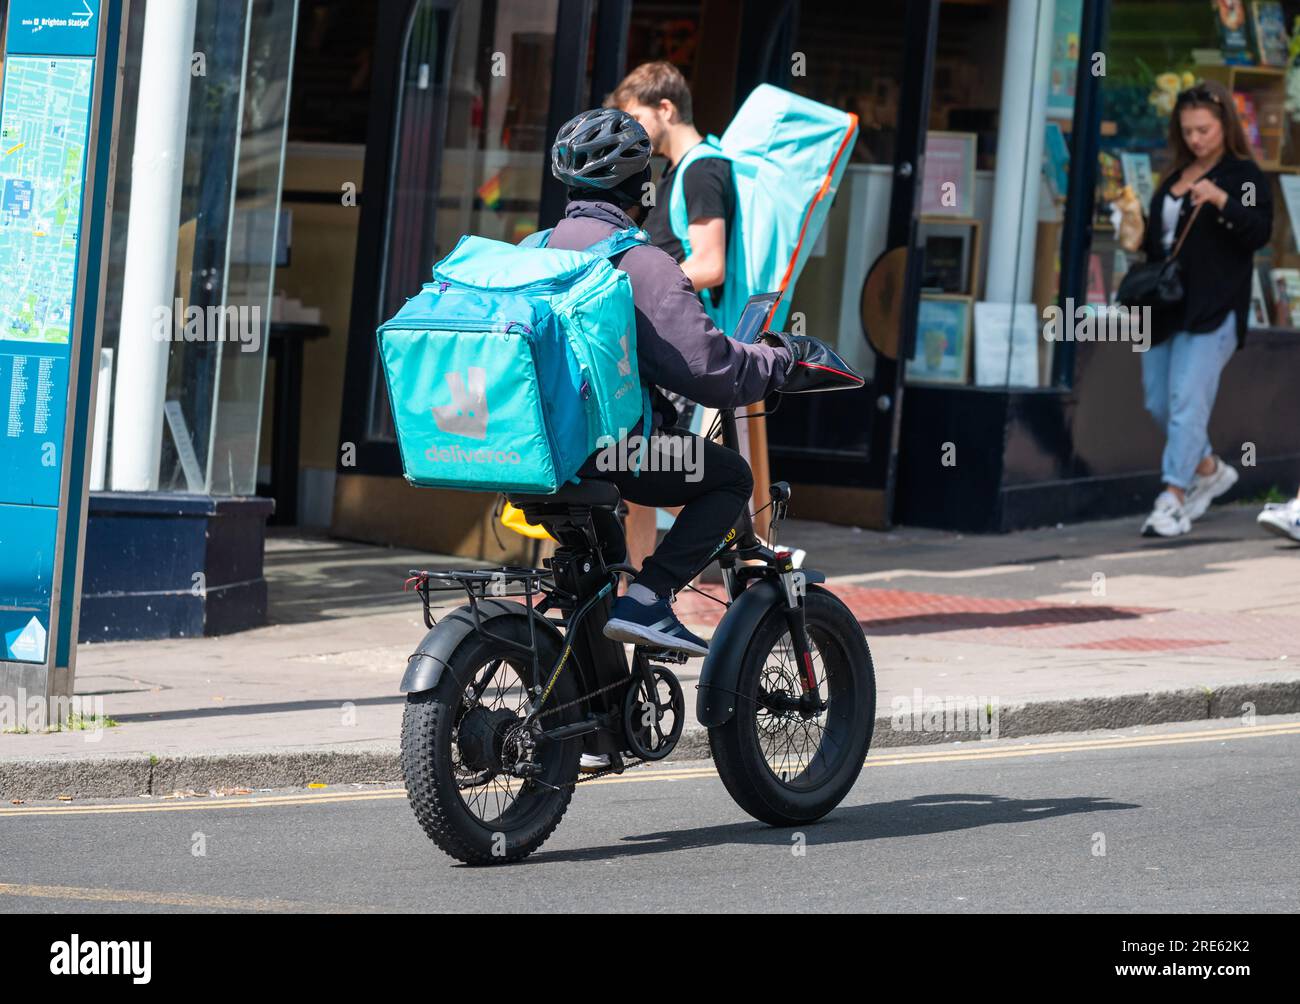 Radfahrer auf einer Fahrradauslieferung für Deliveroo in Brighton & Hove, East Sussex, England, Großbritannien. Stockfoto